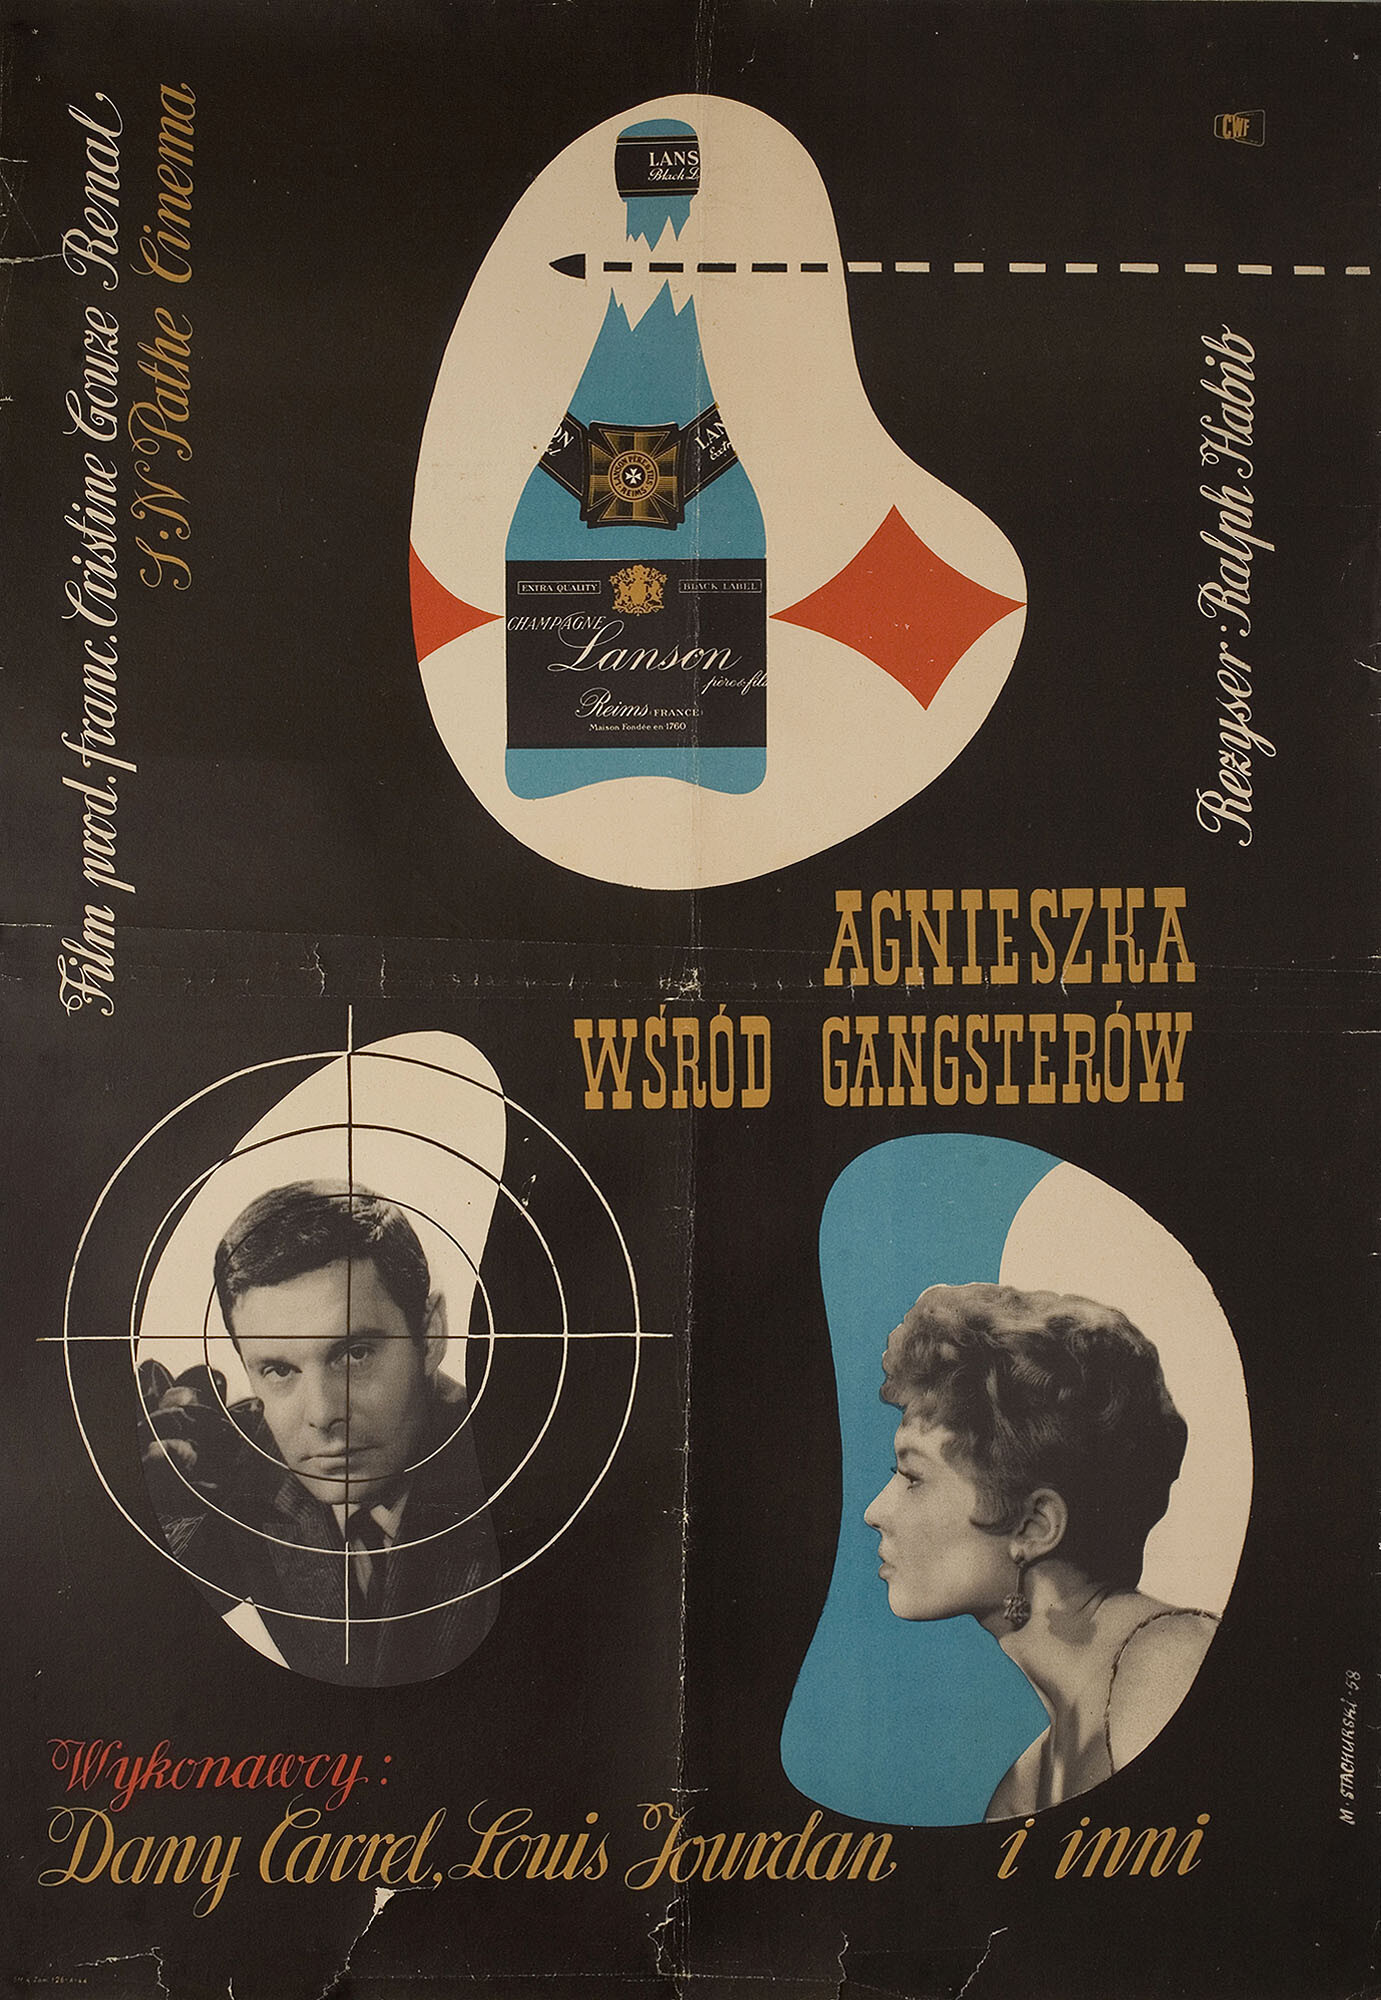 Эскапада (Escapade, 1957), режиссёр Ральф Хабиб, польский плакат к фильму, 1958 год, автор Мариан Стачурски